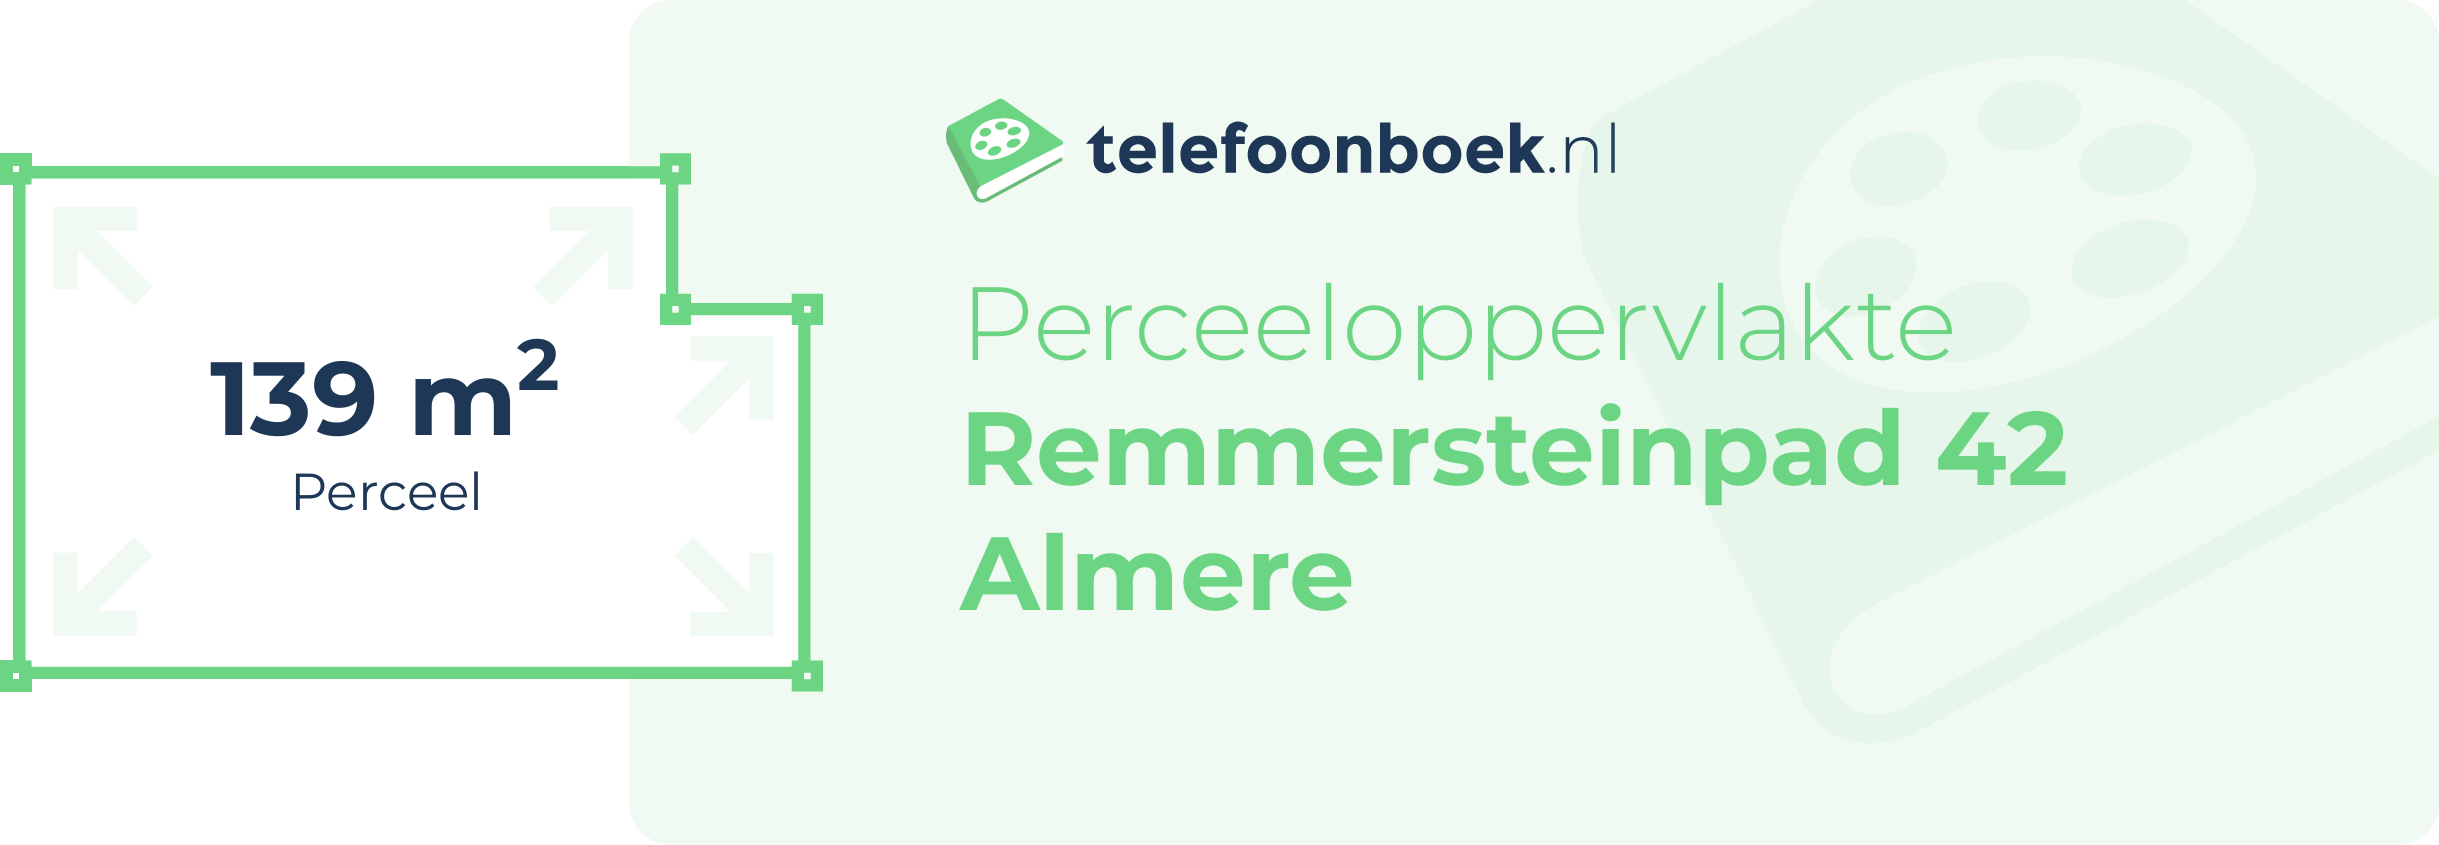 Perceeloppervlakte Remmersteinpad 42 Almere